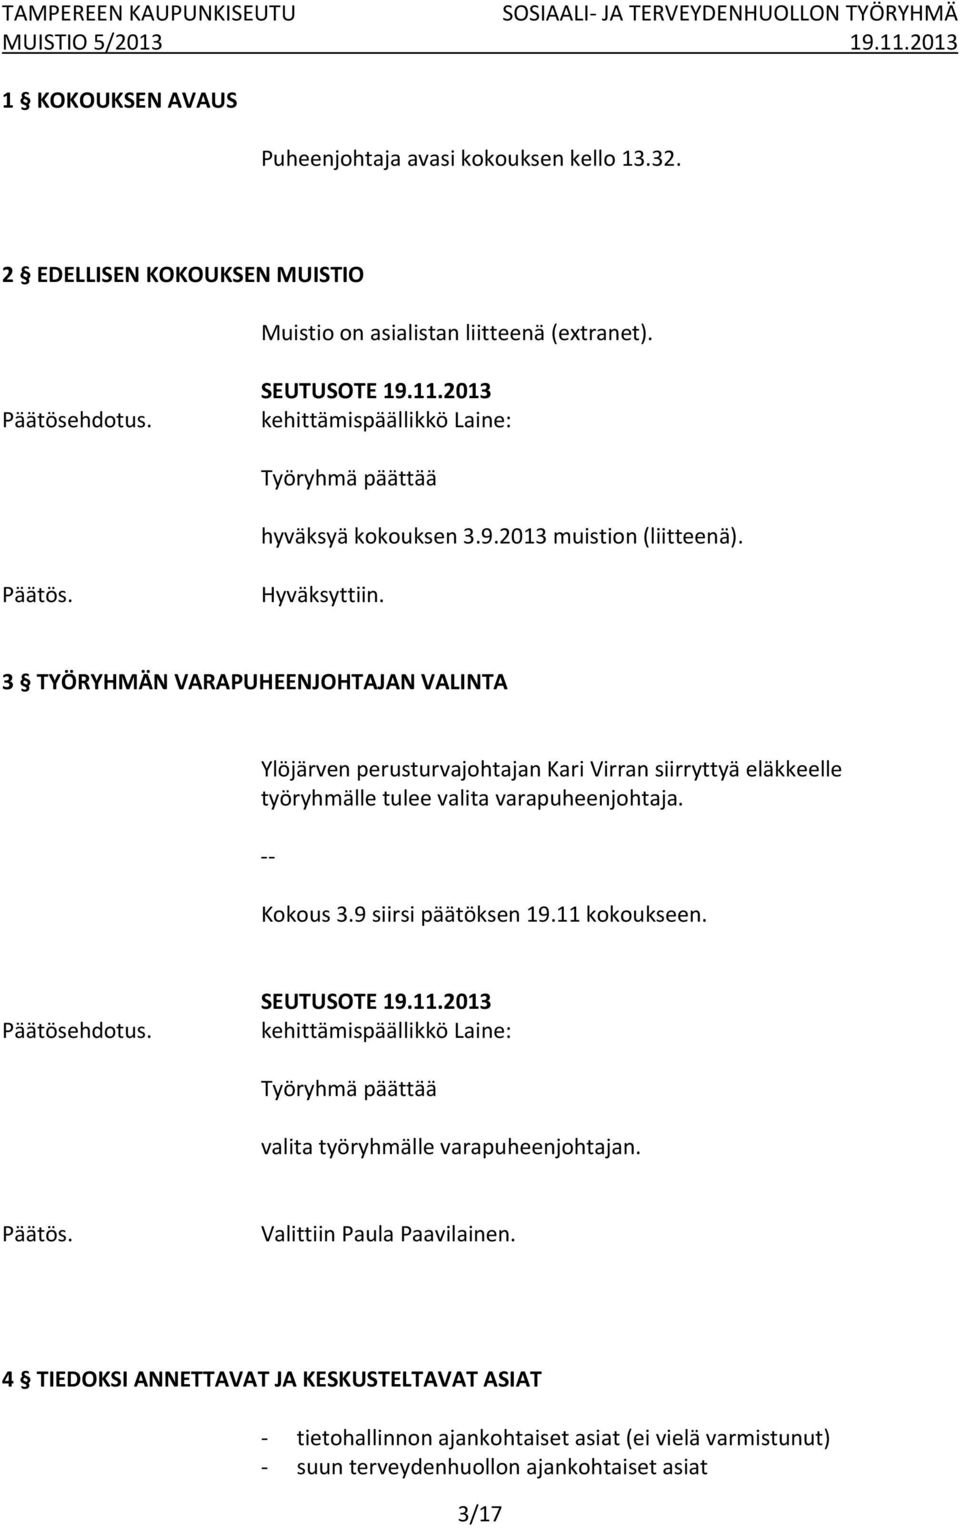 3 TYÖRYHMÄN VARAPUHEENJOHTAJAN VALINTA Ylöjärven perusturvajohtajan Kari Virran siirryttyä eläkkeelle työryhmälle tulee valita varapuheenjohtaja. Kokous 3.9 siirsi päätöksen 19.11 kokoukseen.